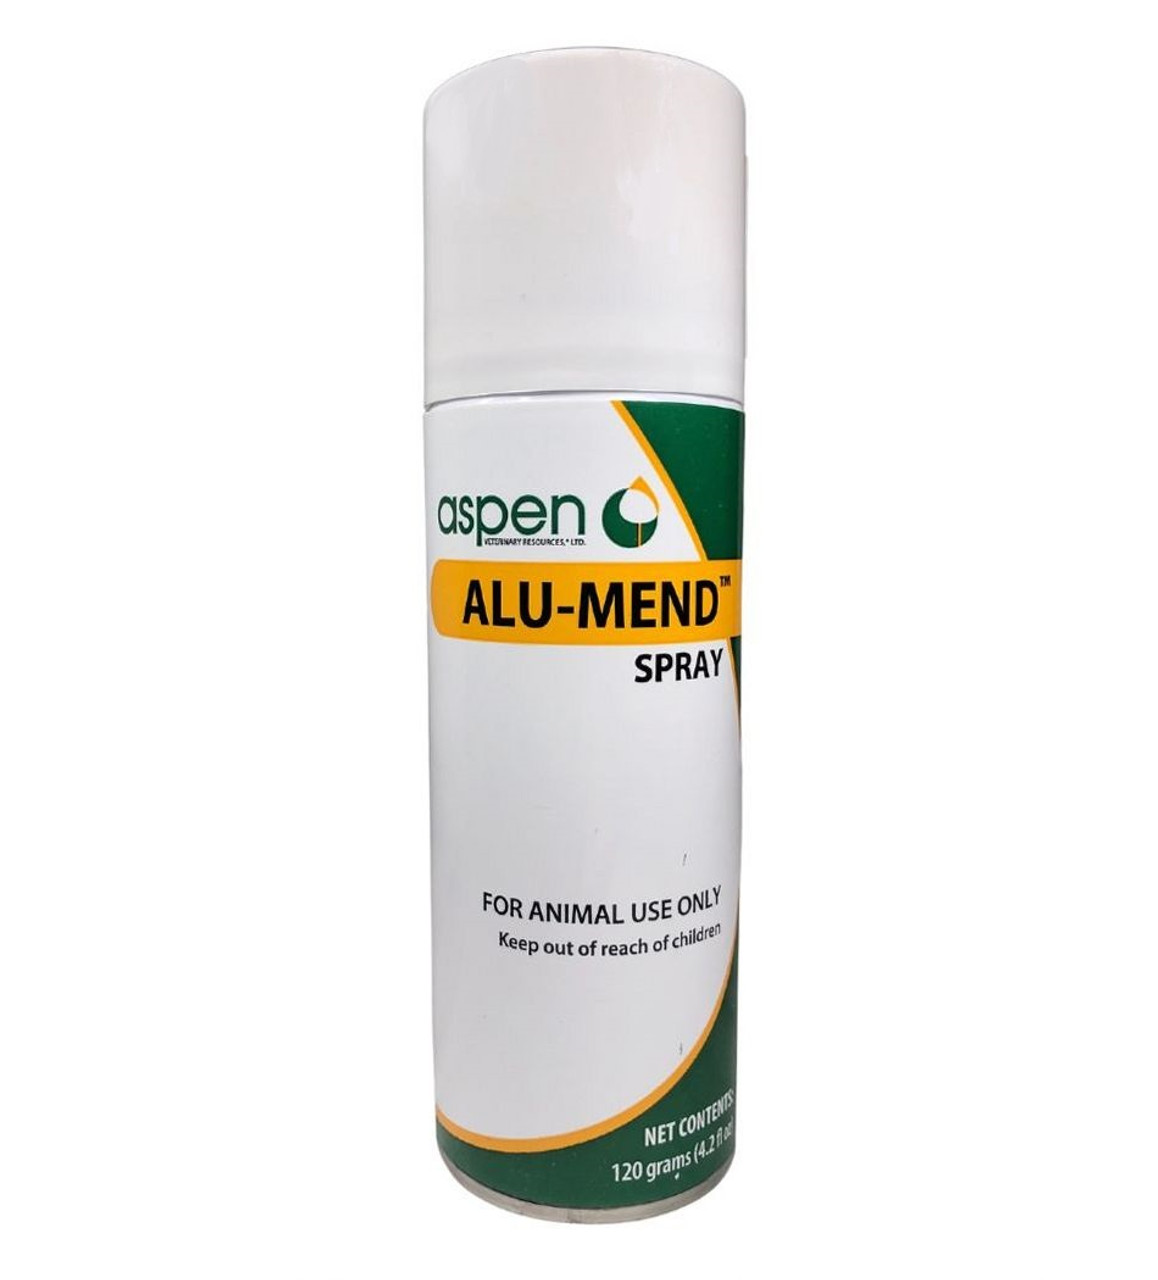 Alu-Mend Spray